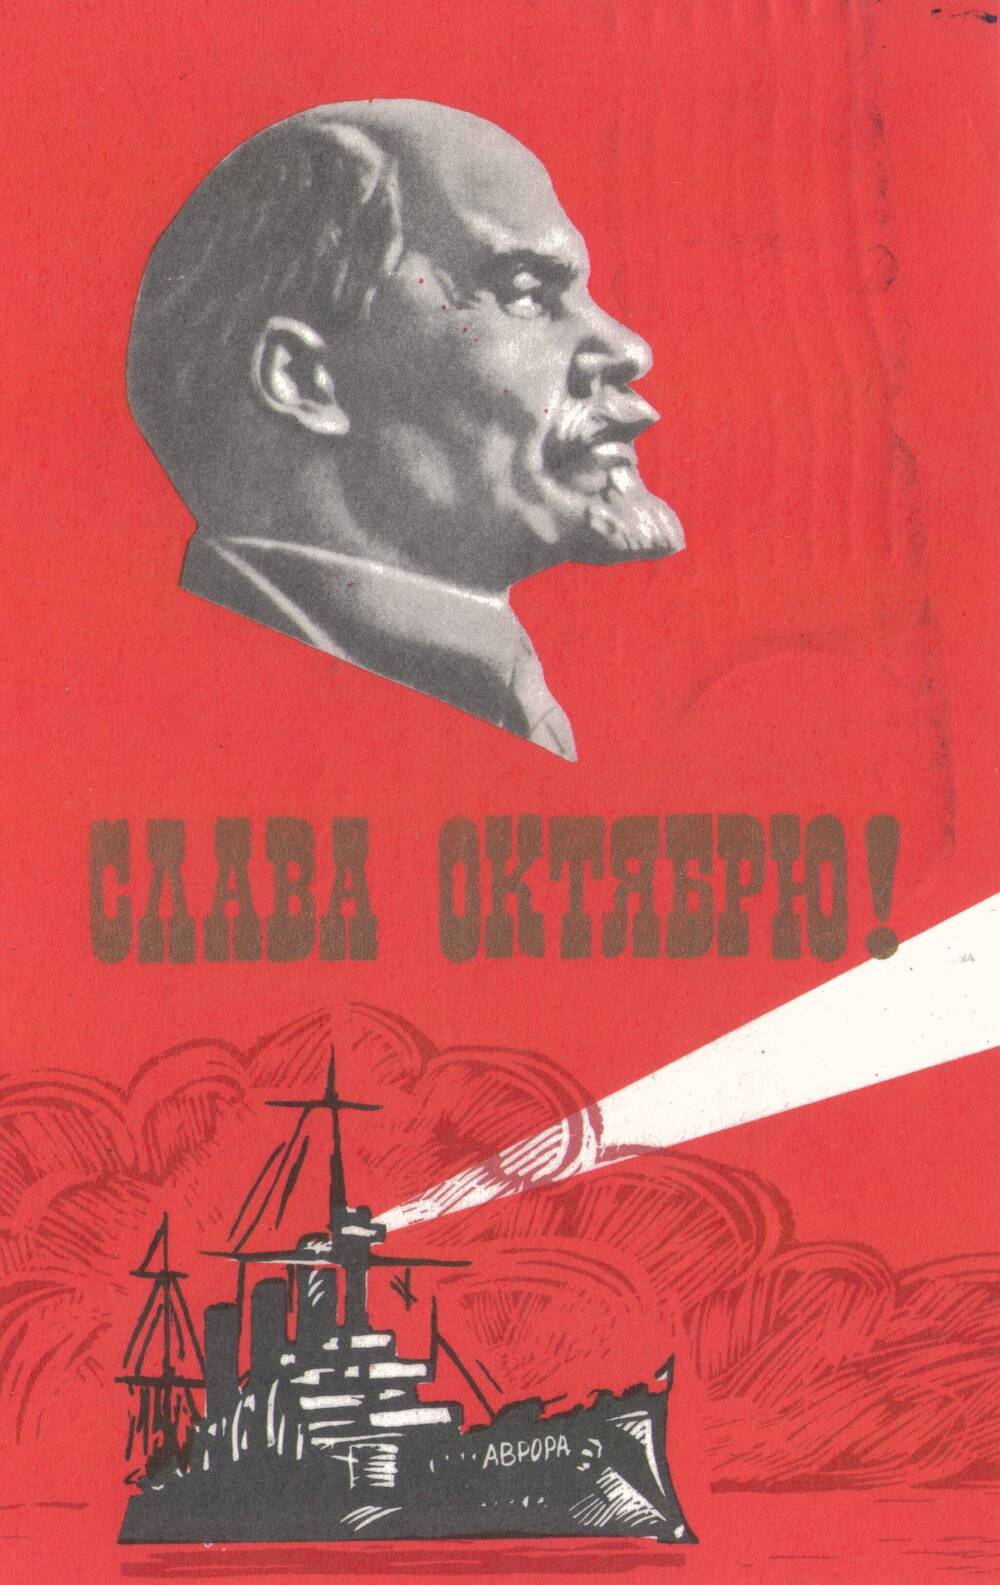 Карточка почтовая
художественная поздравительная к Дню
Октябрьской революции